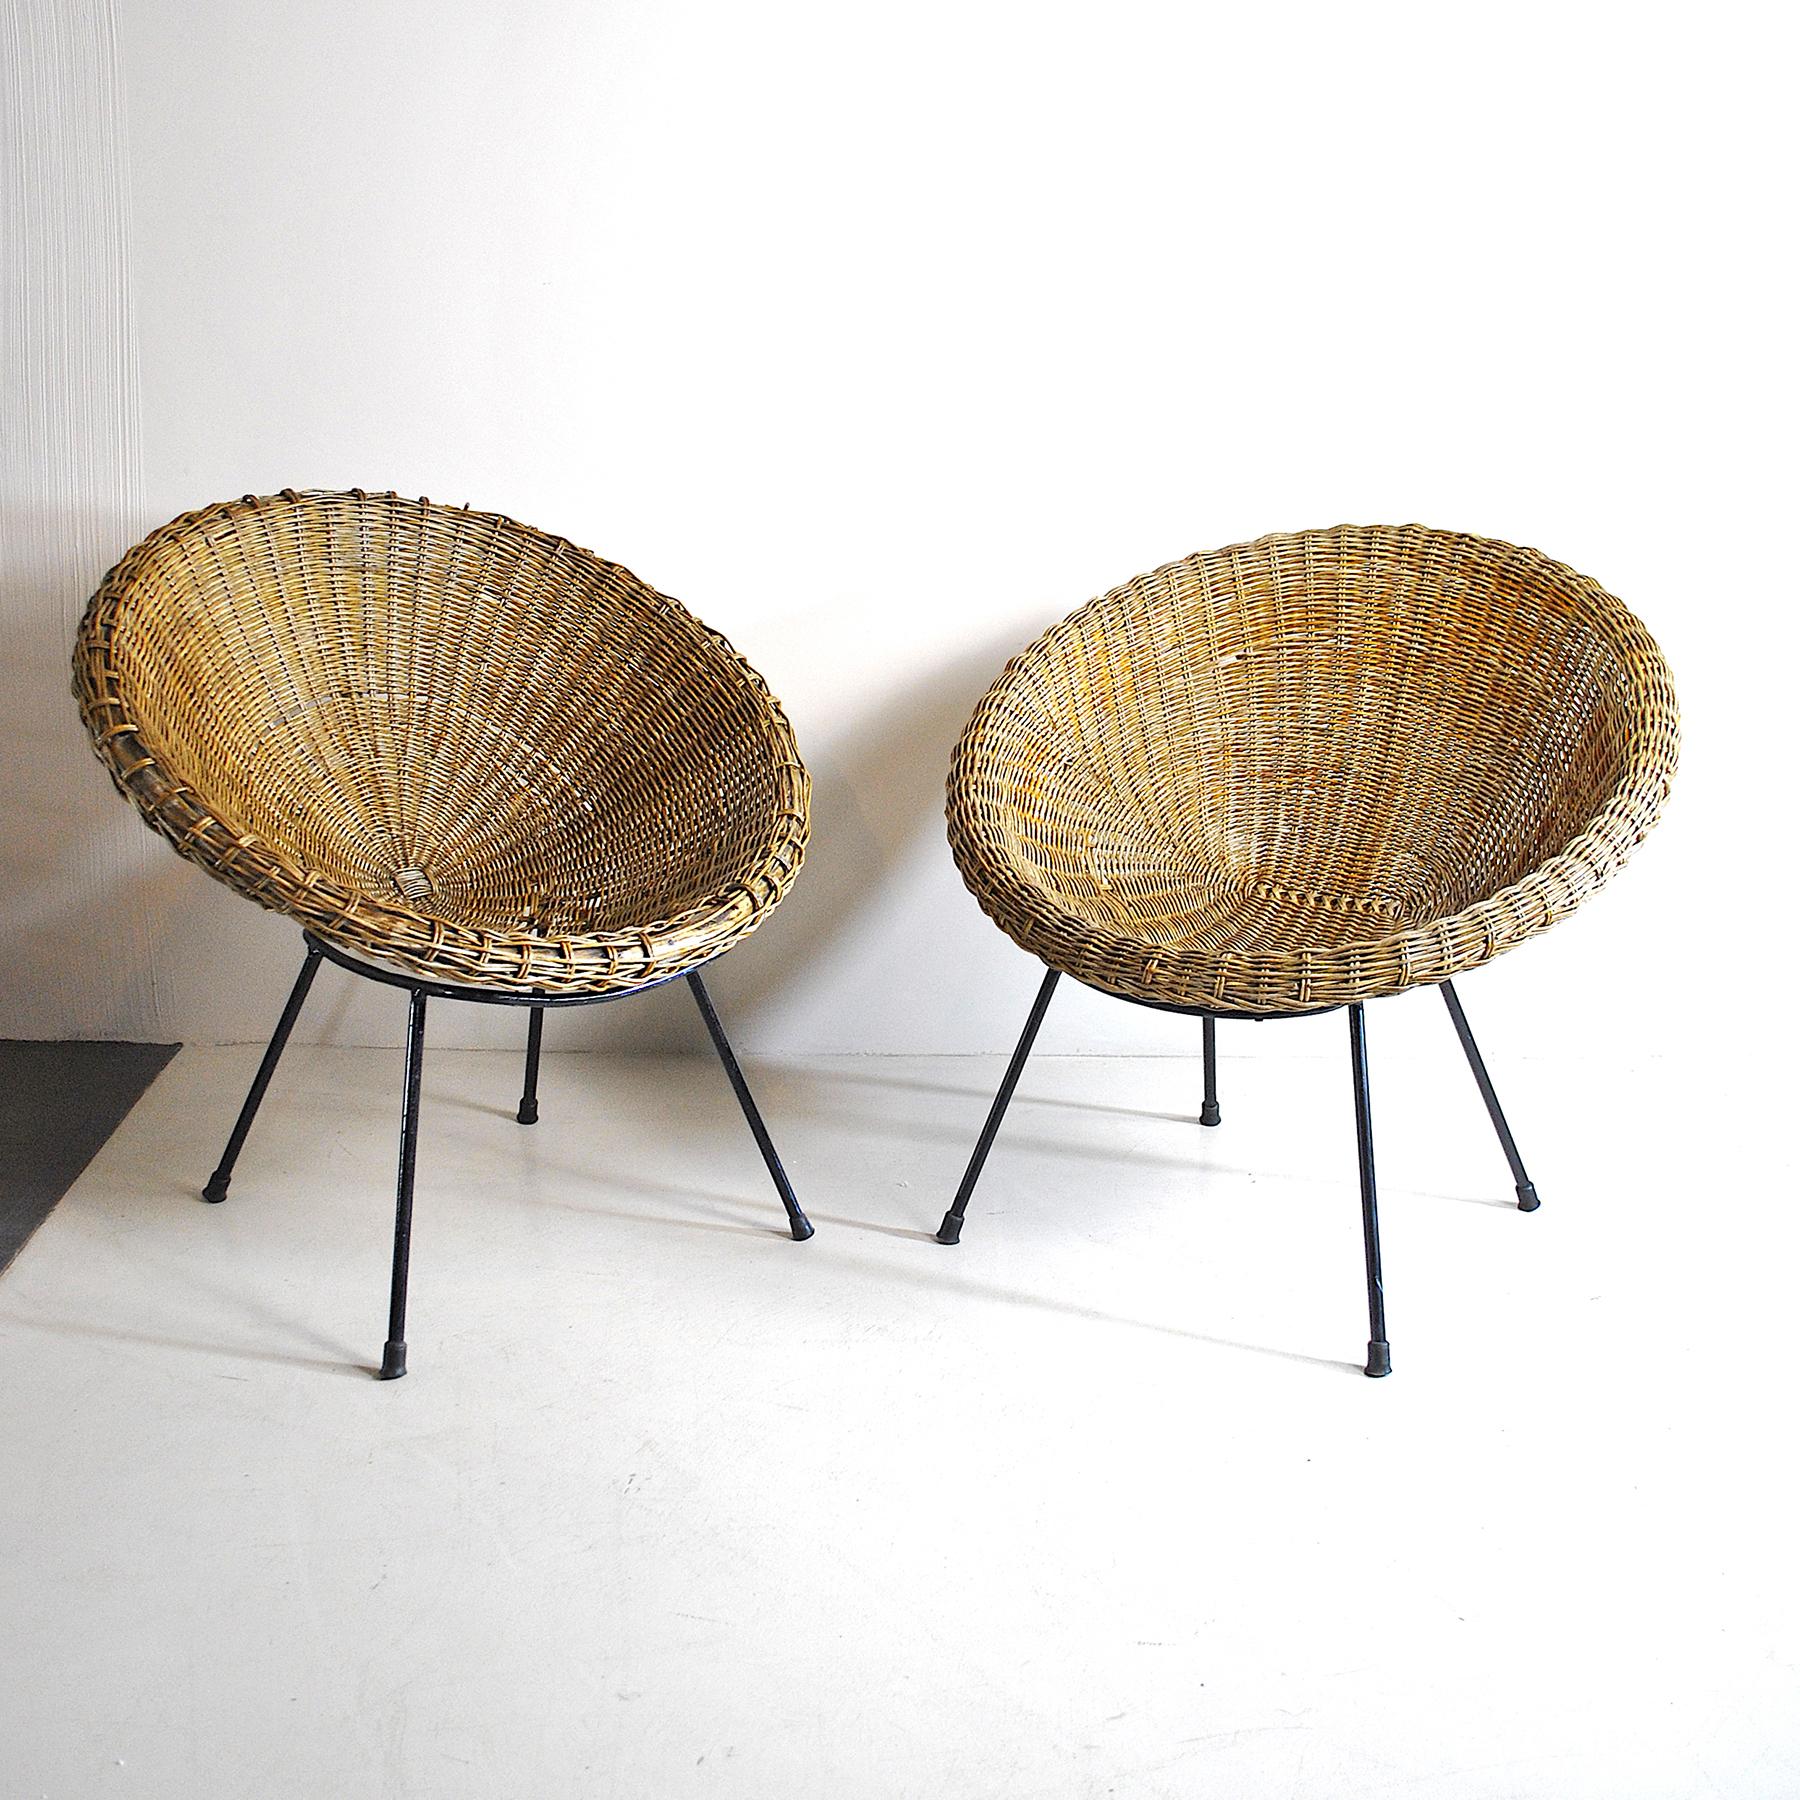 Paire de chaises oeufs en rotin avec structure en fer, production italienne des années 1960 (une pièce doit être restaurée de manière significative).